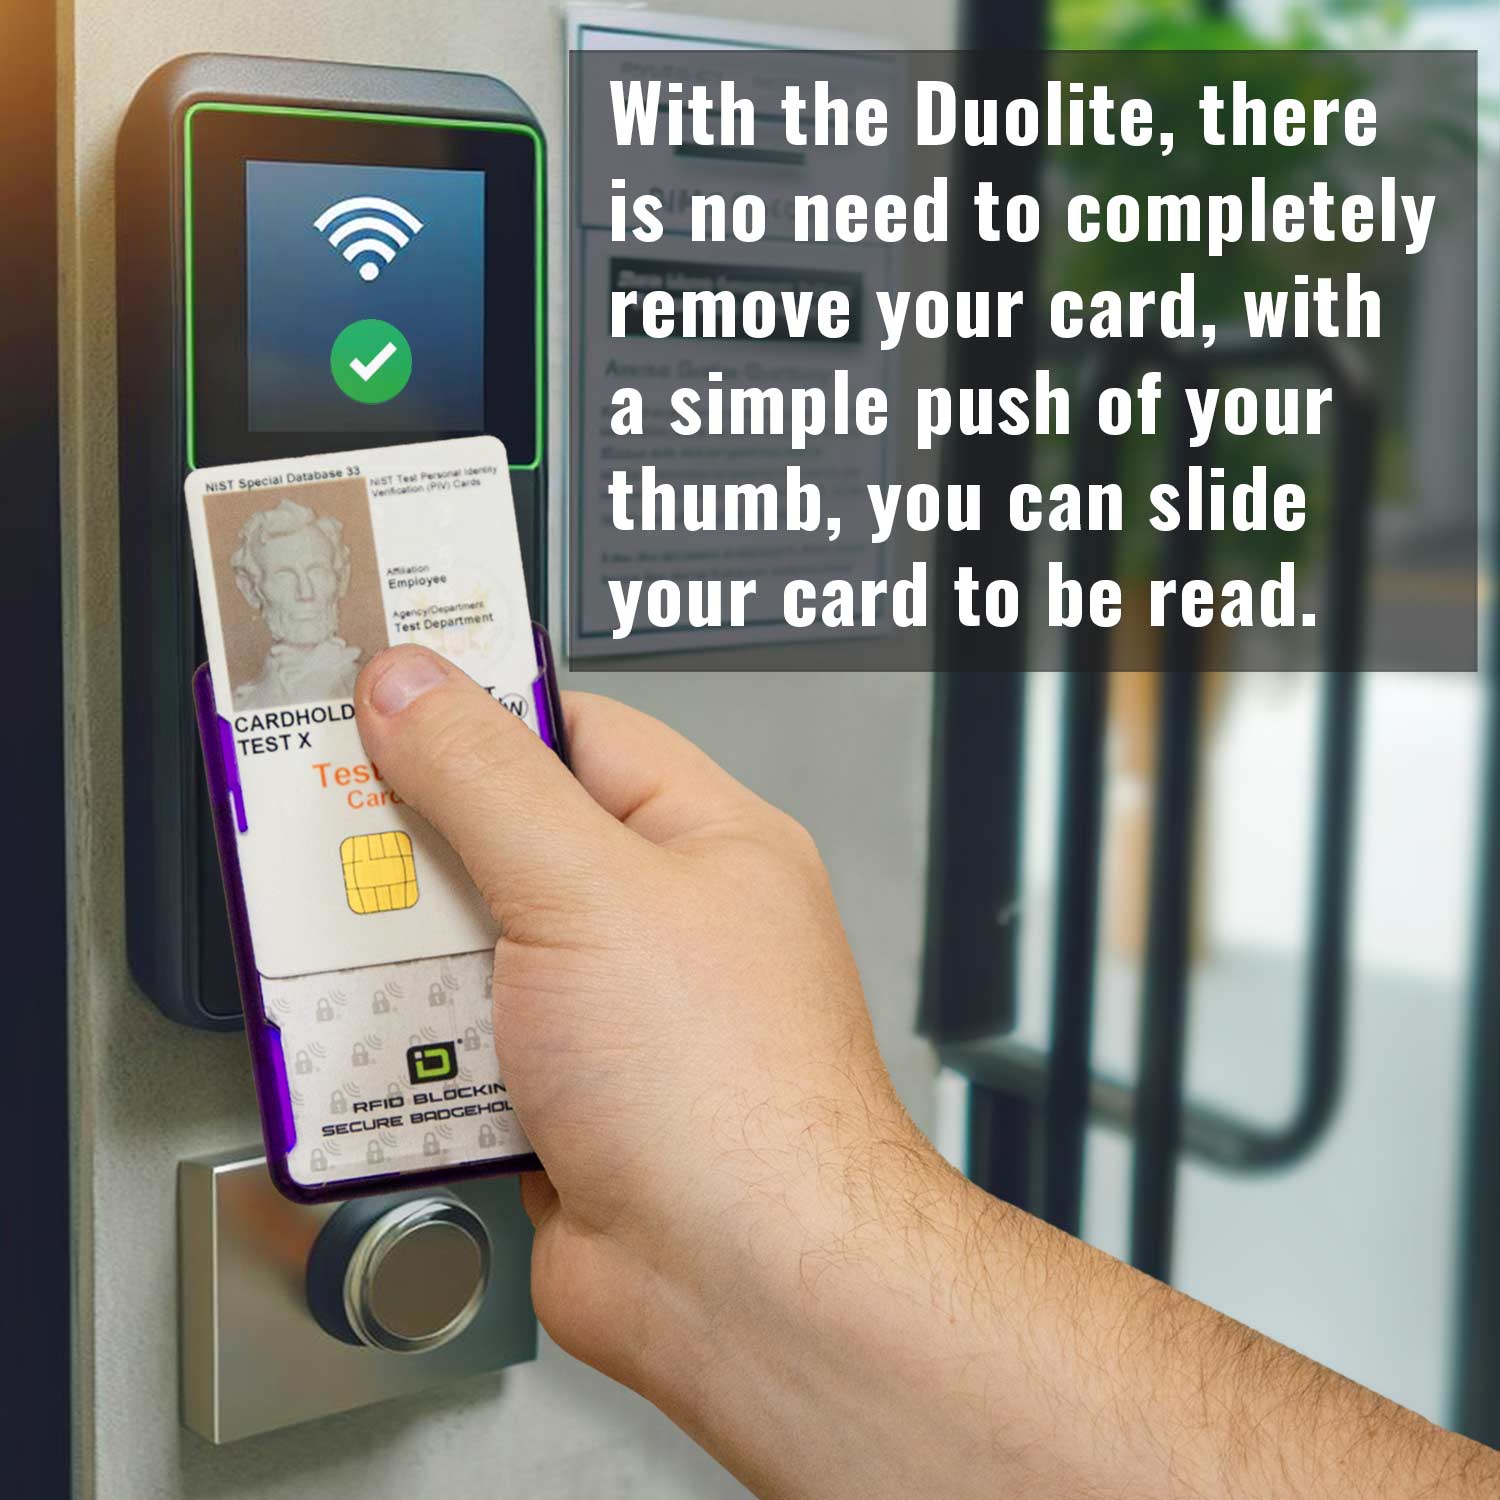 Secure Badge Holder DuoLite ® Vertical 2 ID Card Holder